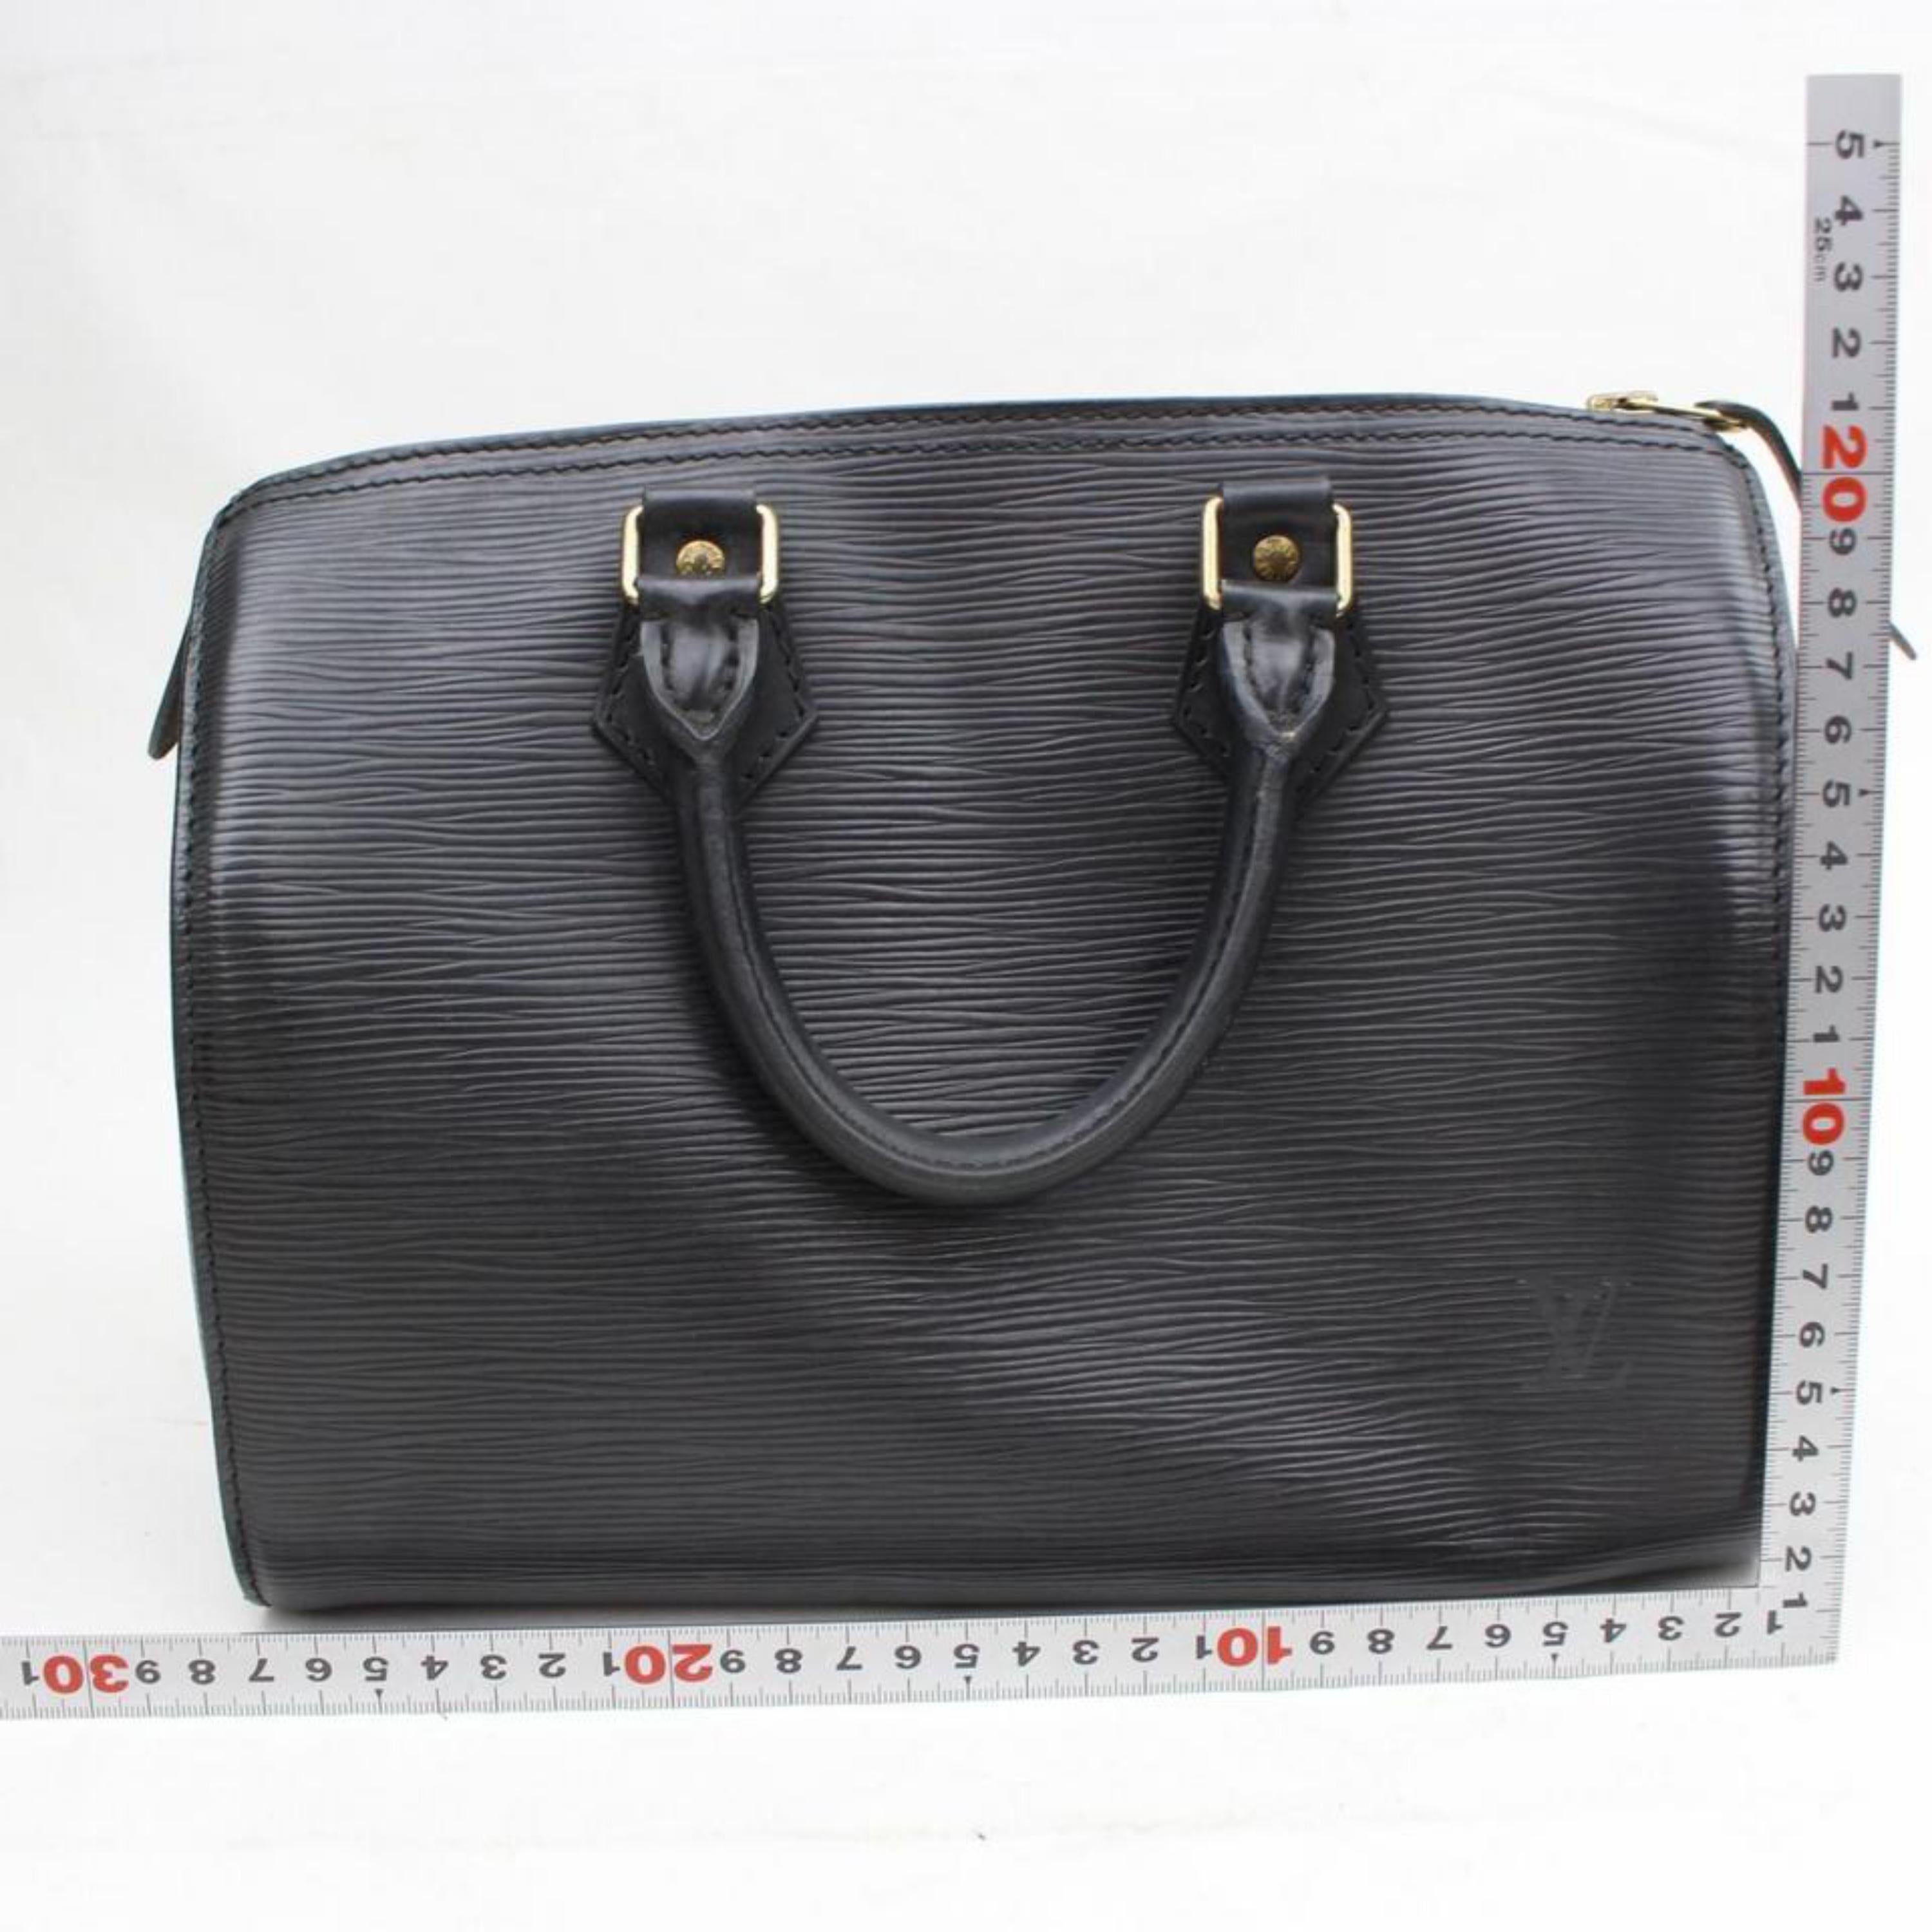 Louis Vuitton Speedy Noir 25 869188 Black Leather Satchel For Sale 2